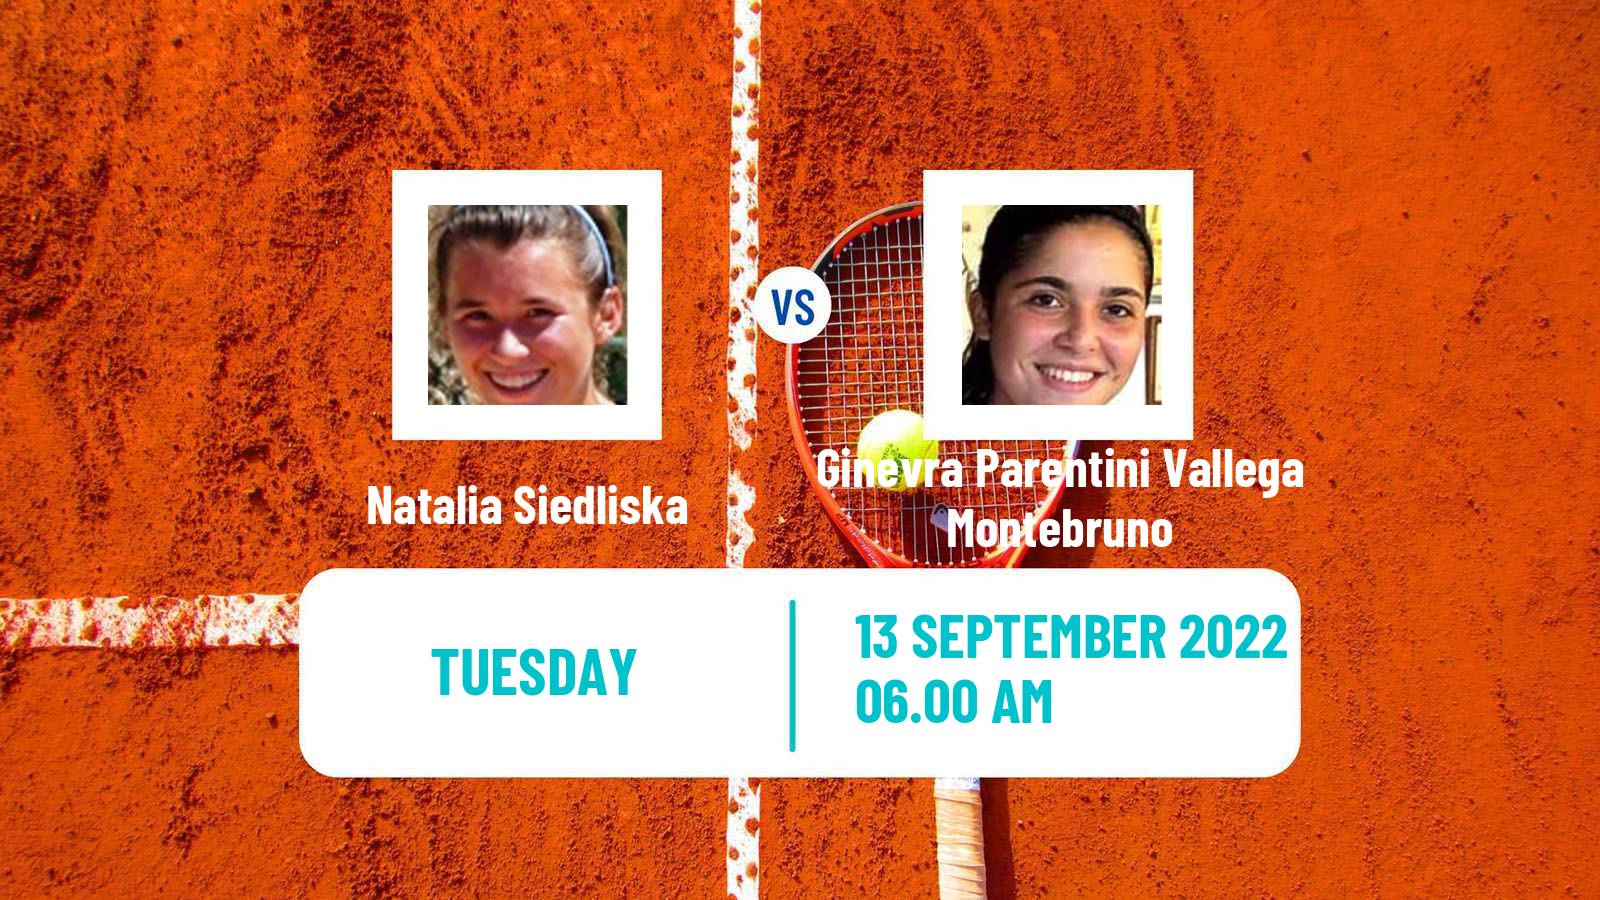 Tennis ITF Tournaments Natalia Siedliska - Ginevra Parentini Vallega Montebruno